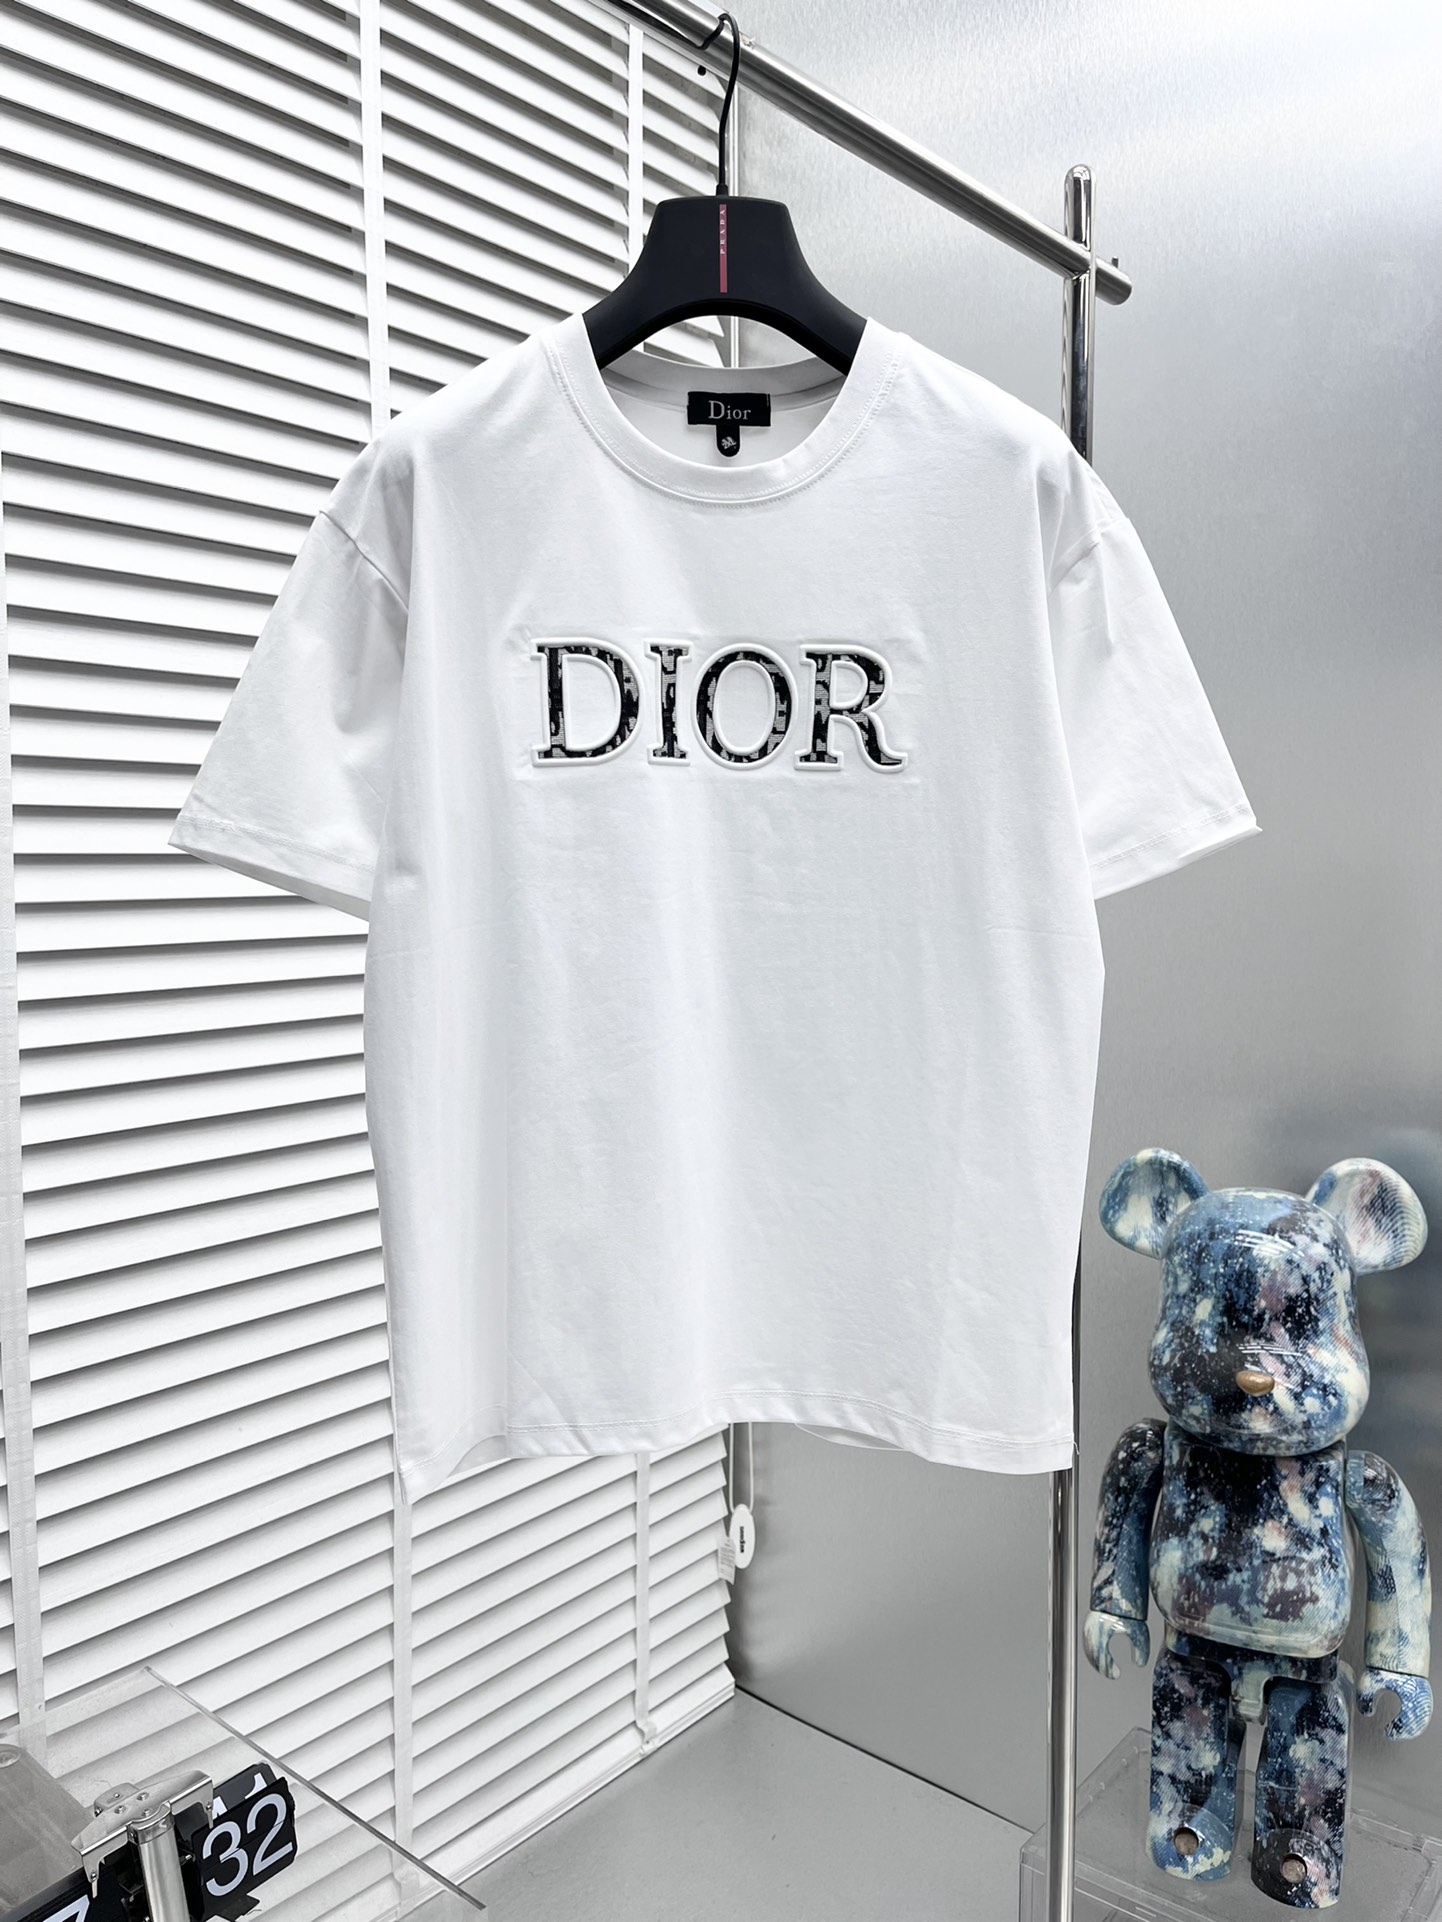 dior ミディシャツドレスコピー シンプル 半袖 トップス 純綿 ファッション ロゴプリント 柔らかい ホワイト_1